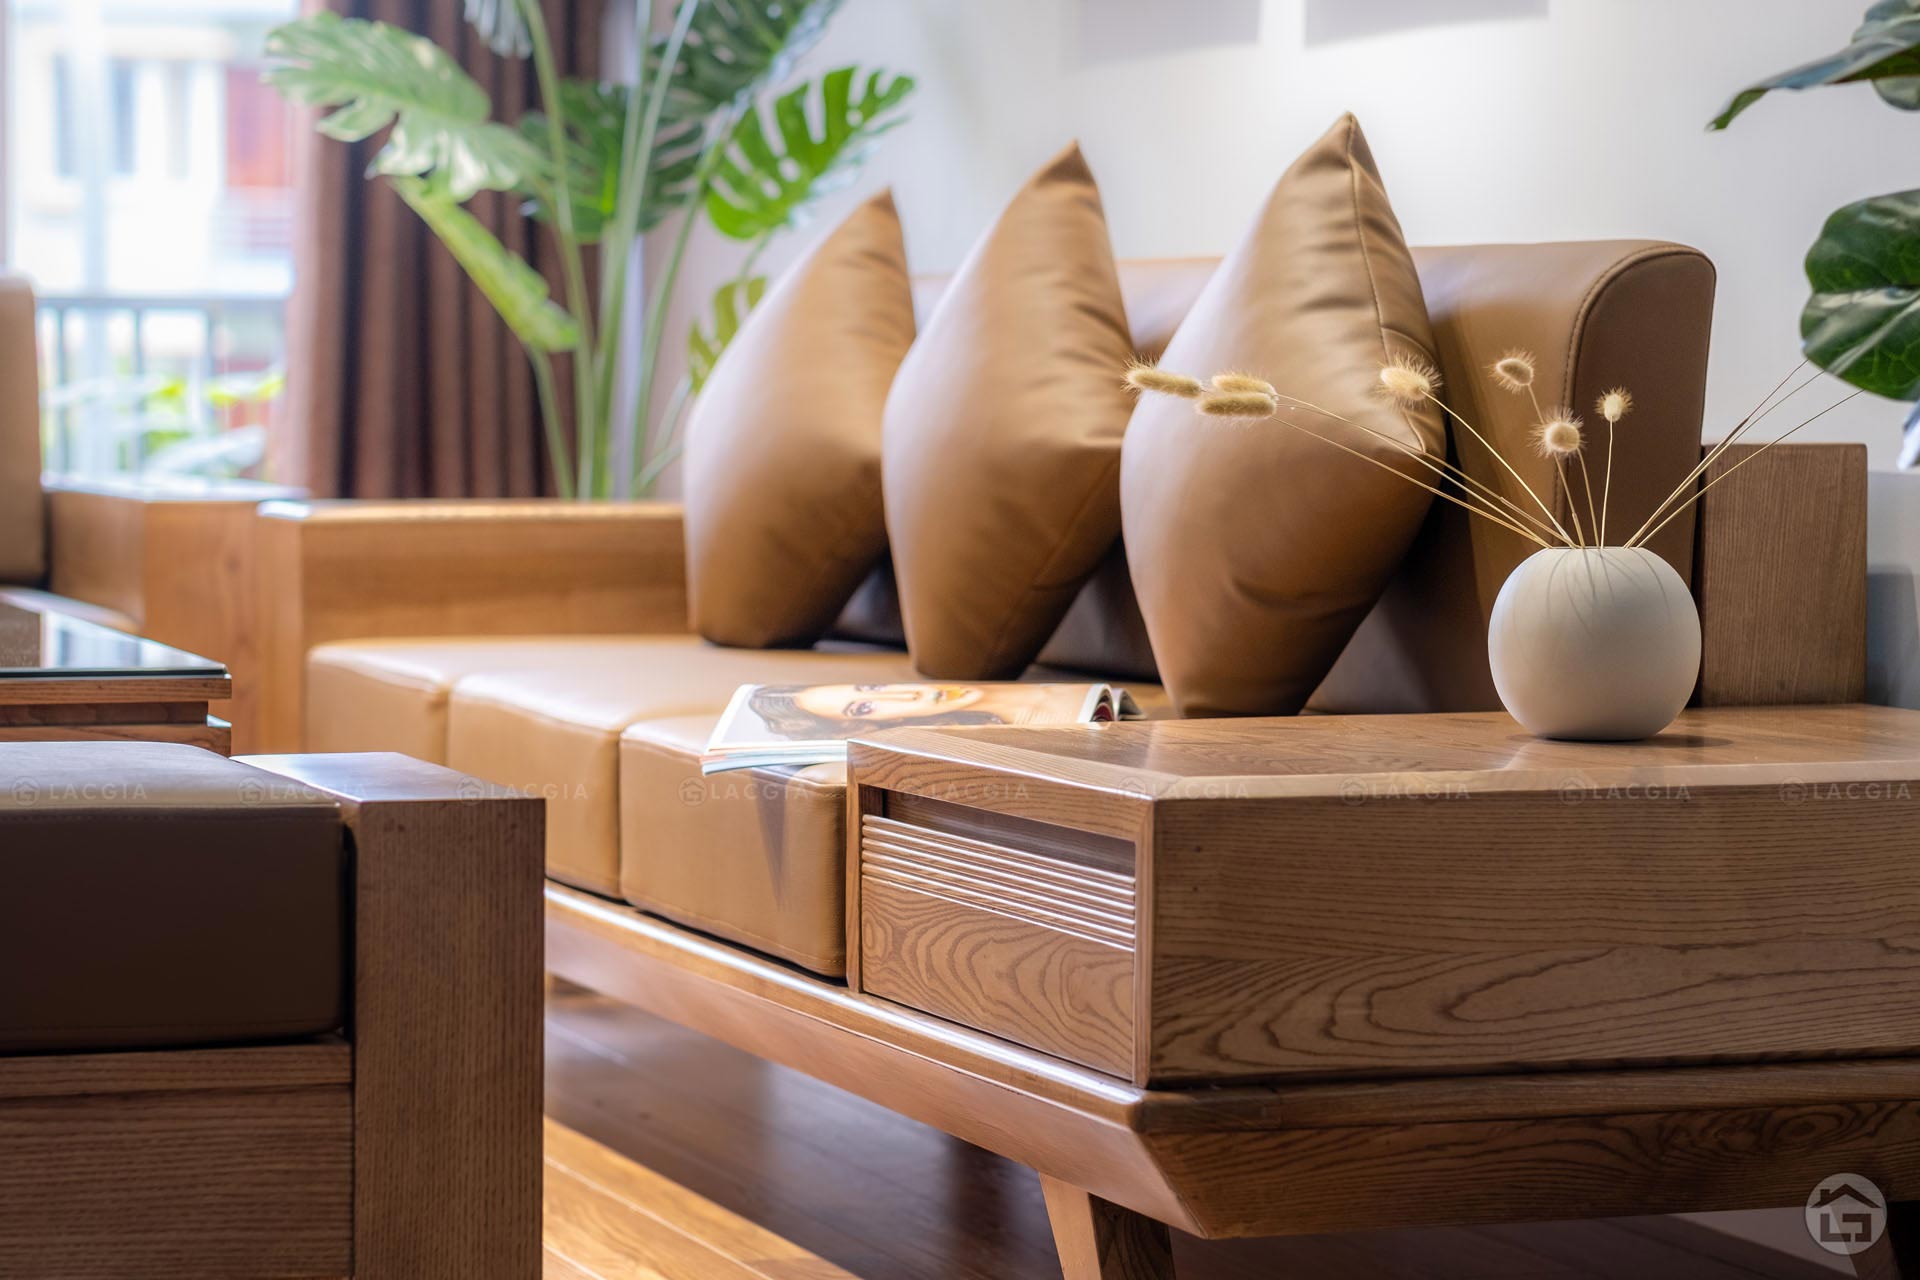 Sofa gỗ đẹp hiện đại cho phòng khách chung cư